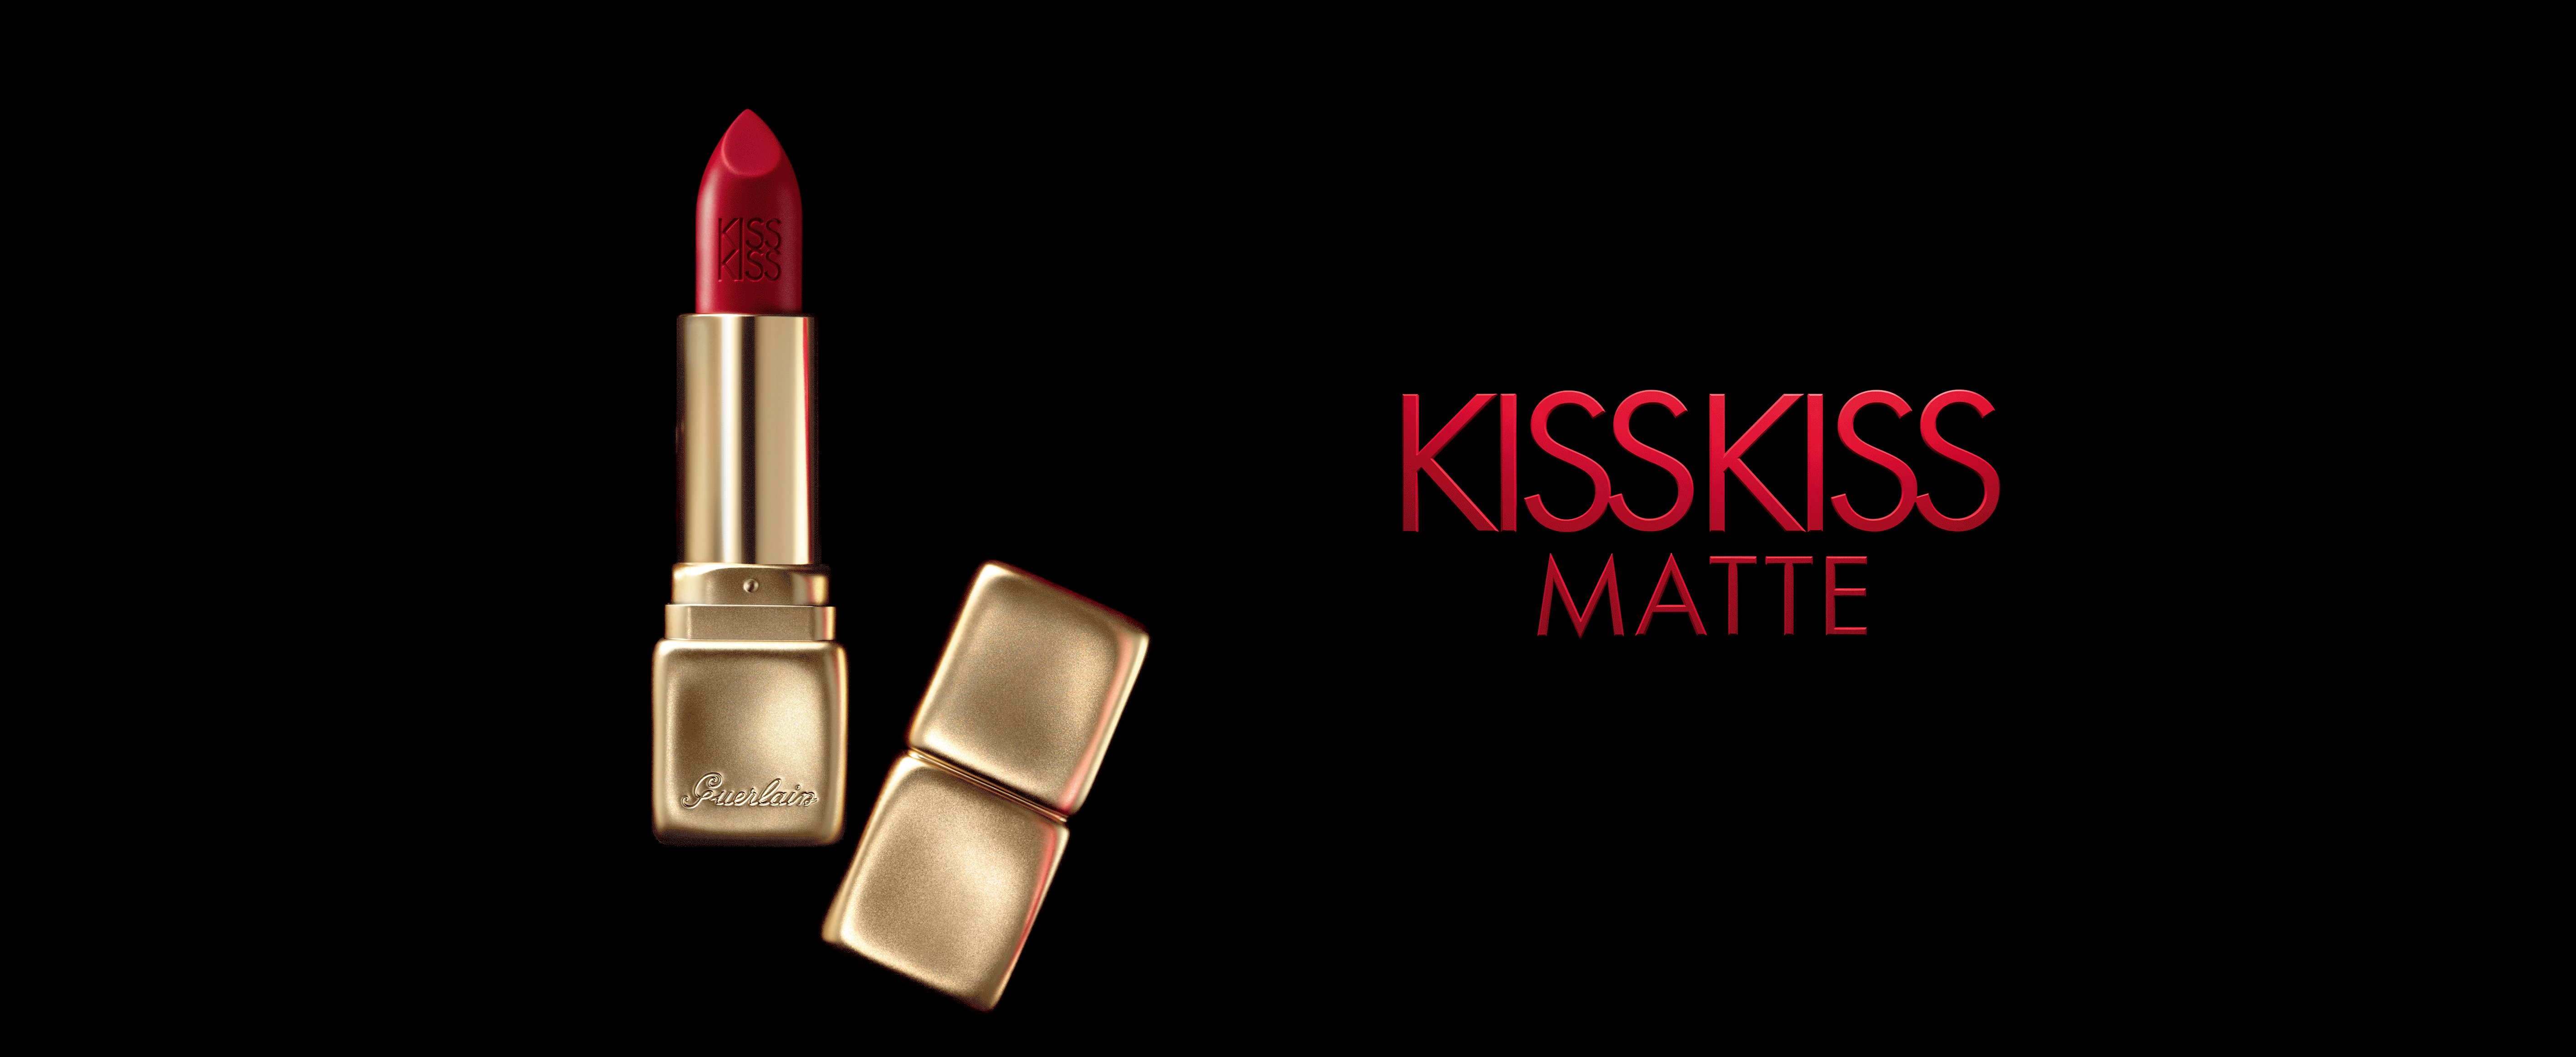 Guerlain Kiss Kiss Matte, colección barras de labios